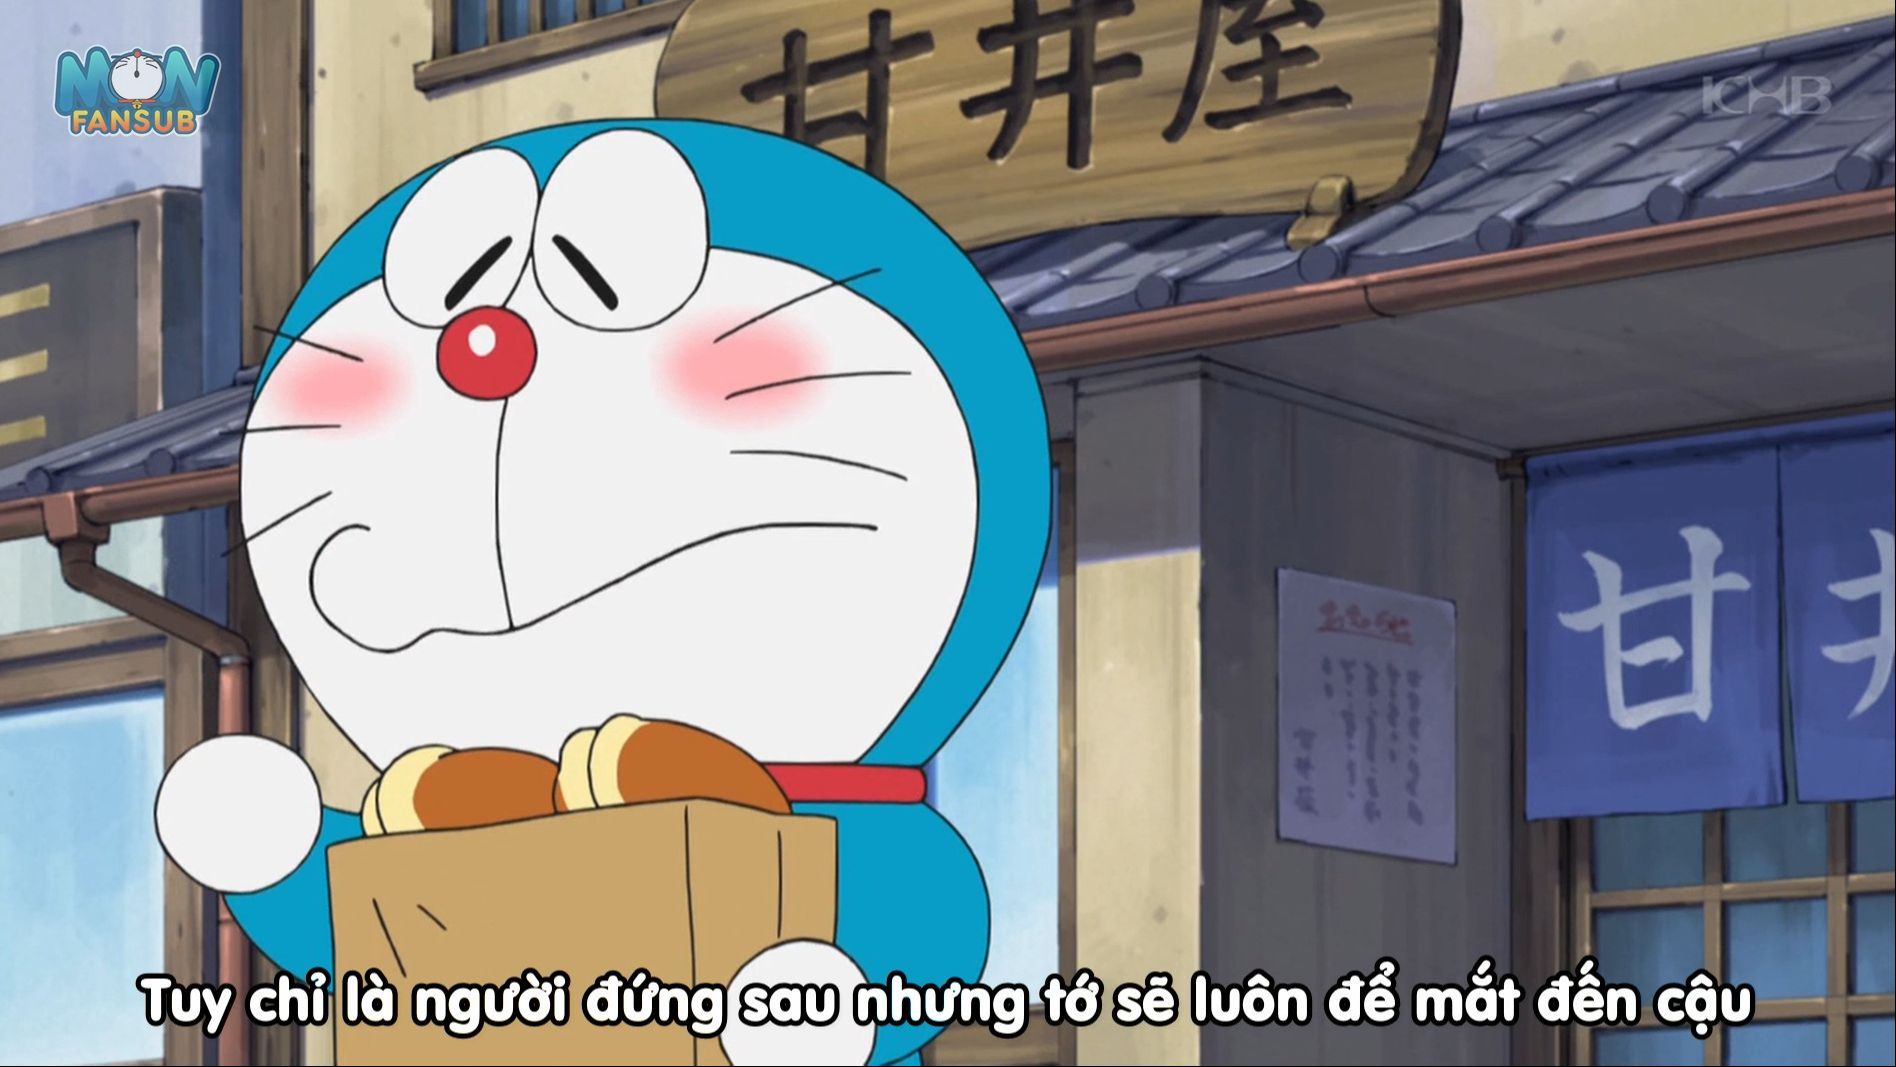 Review Doraemon  Chơi Hyakunin Bằng Bánh Mì Trí Nhớ  CHIHEOXINH  1142   YouTube